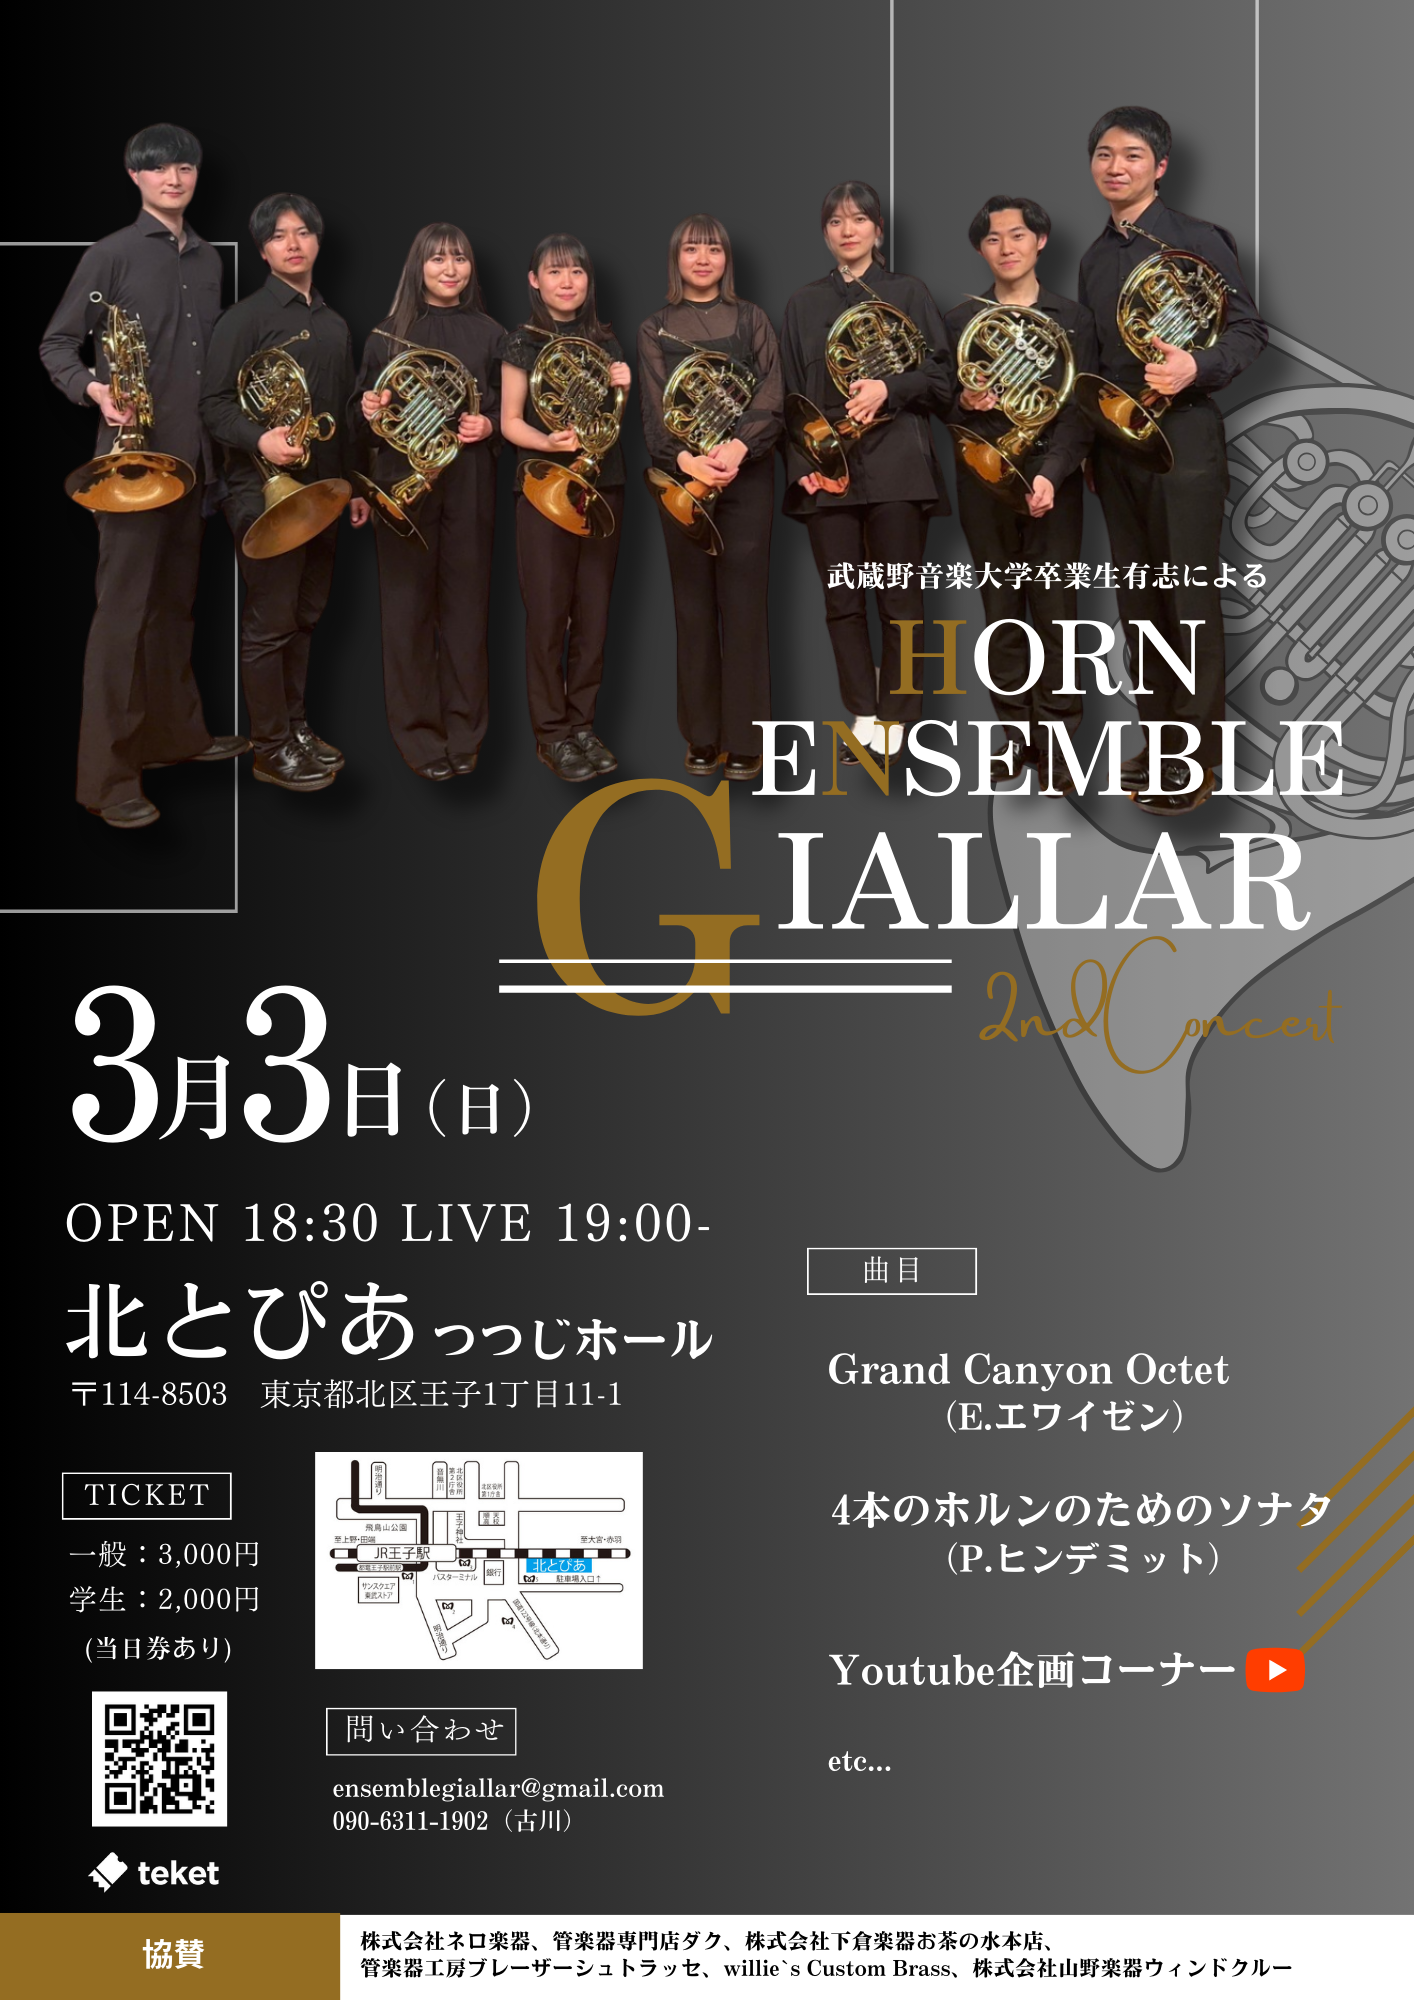 Horn Ensemble Giallar 2nd Concert